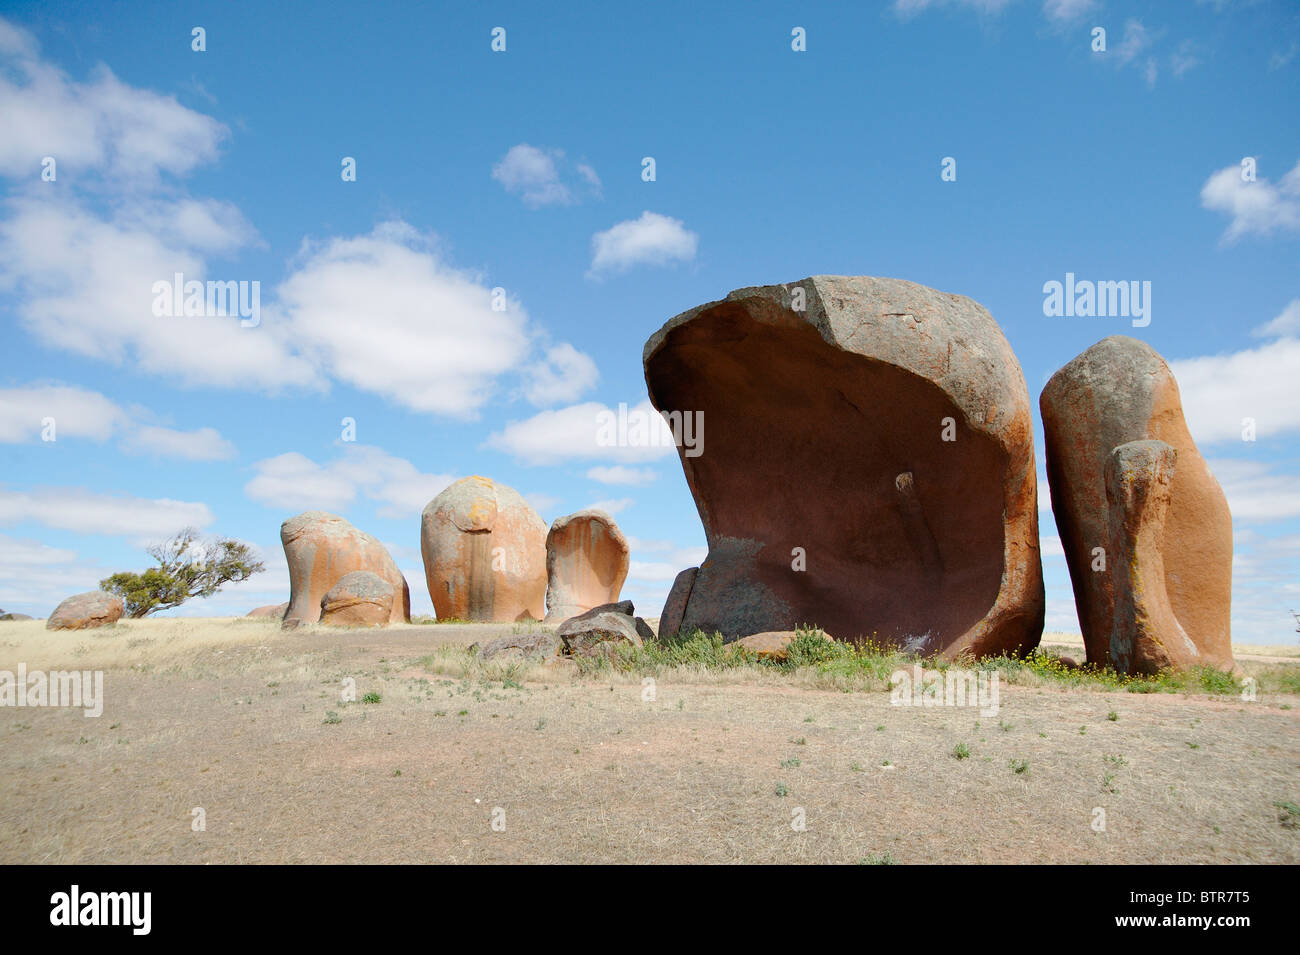 L'Australie, le sud de l'Australie, Murphy's Haystacks, usé les roches de granit rose Banque D'Images